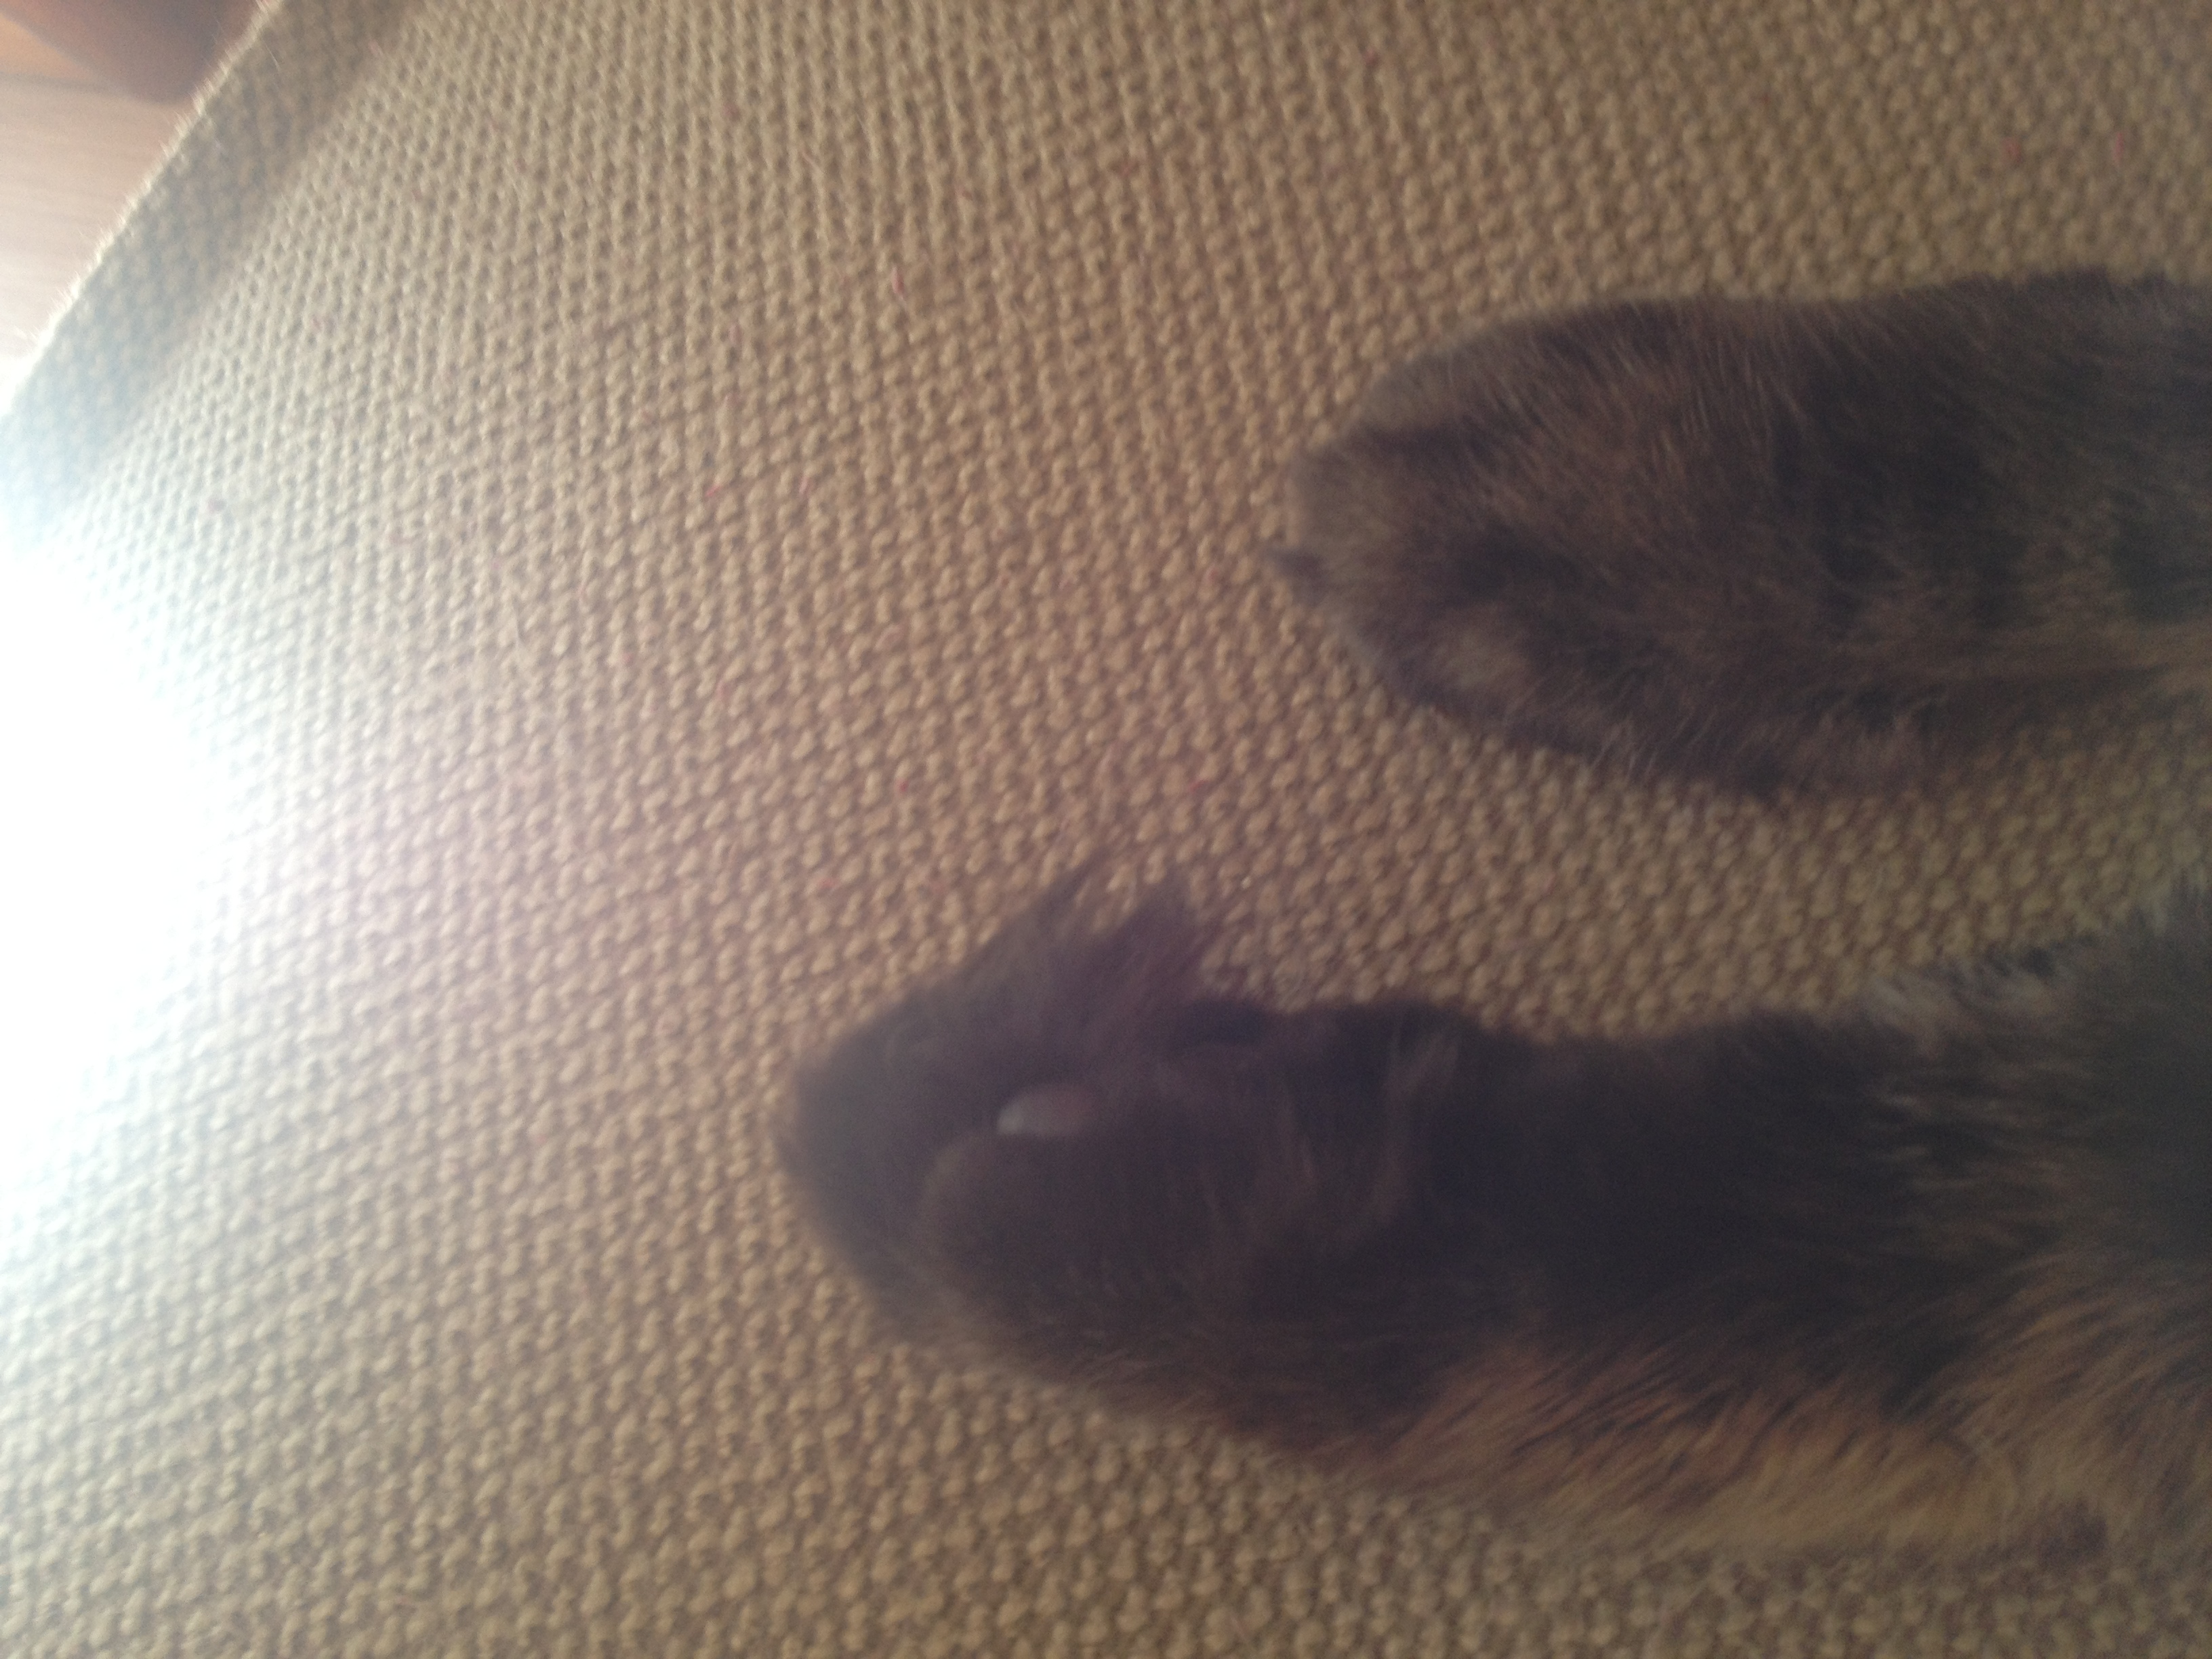 fuzzy fuzzy paws